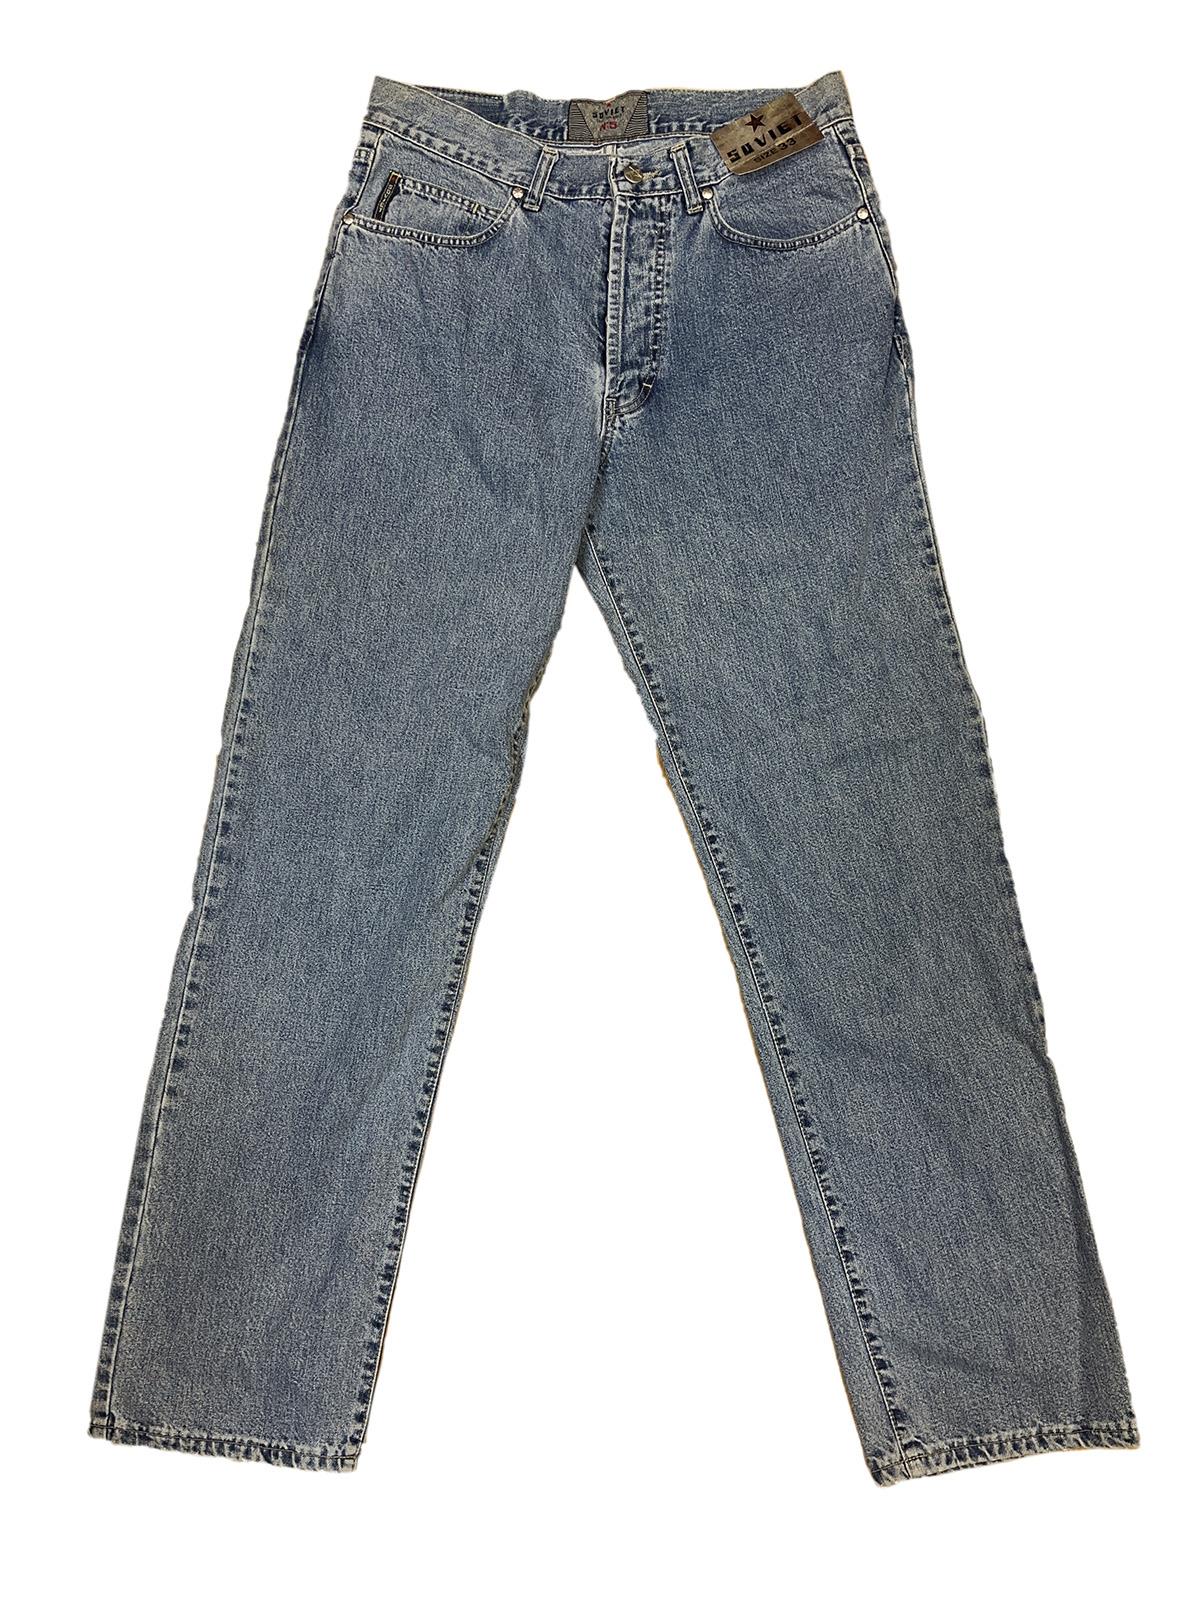 SOVIET No. 5 Jeans